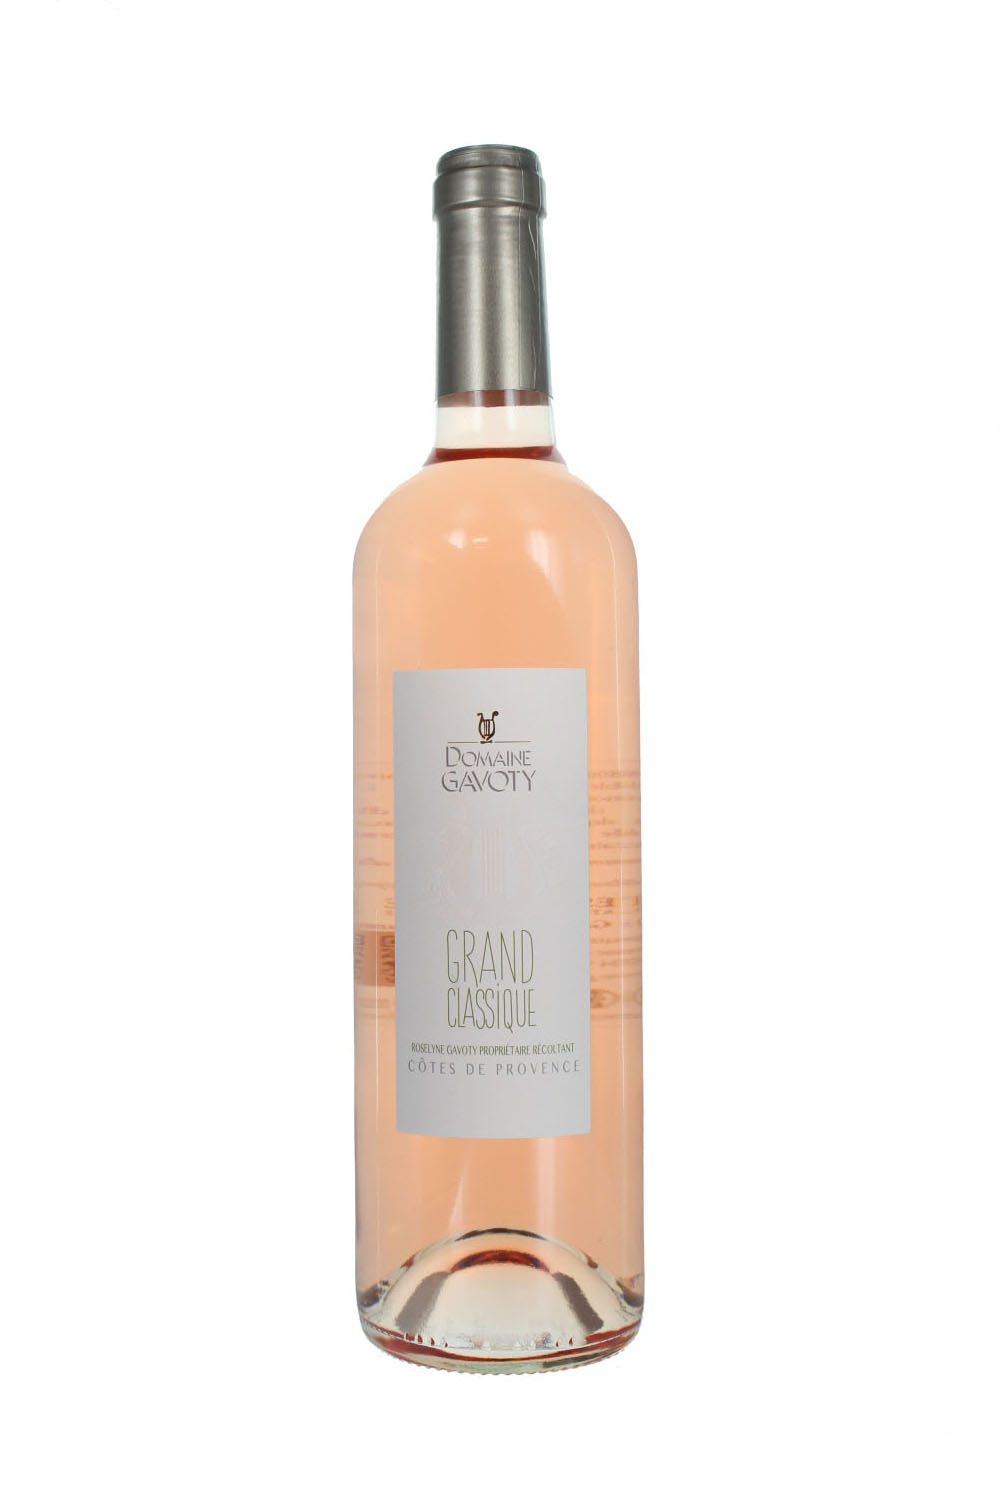 2018 Gavoty Grand Classique Rose, Domaine Gavoty, Cotes de Provence  (Bottle) - Jeroboams